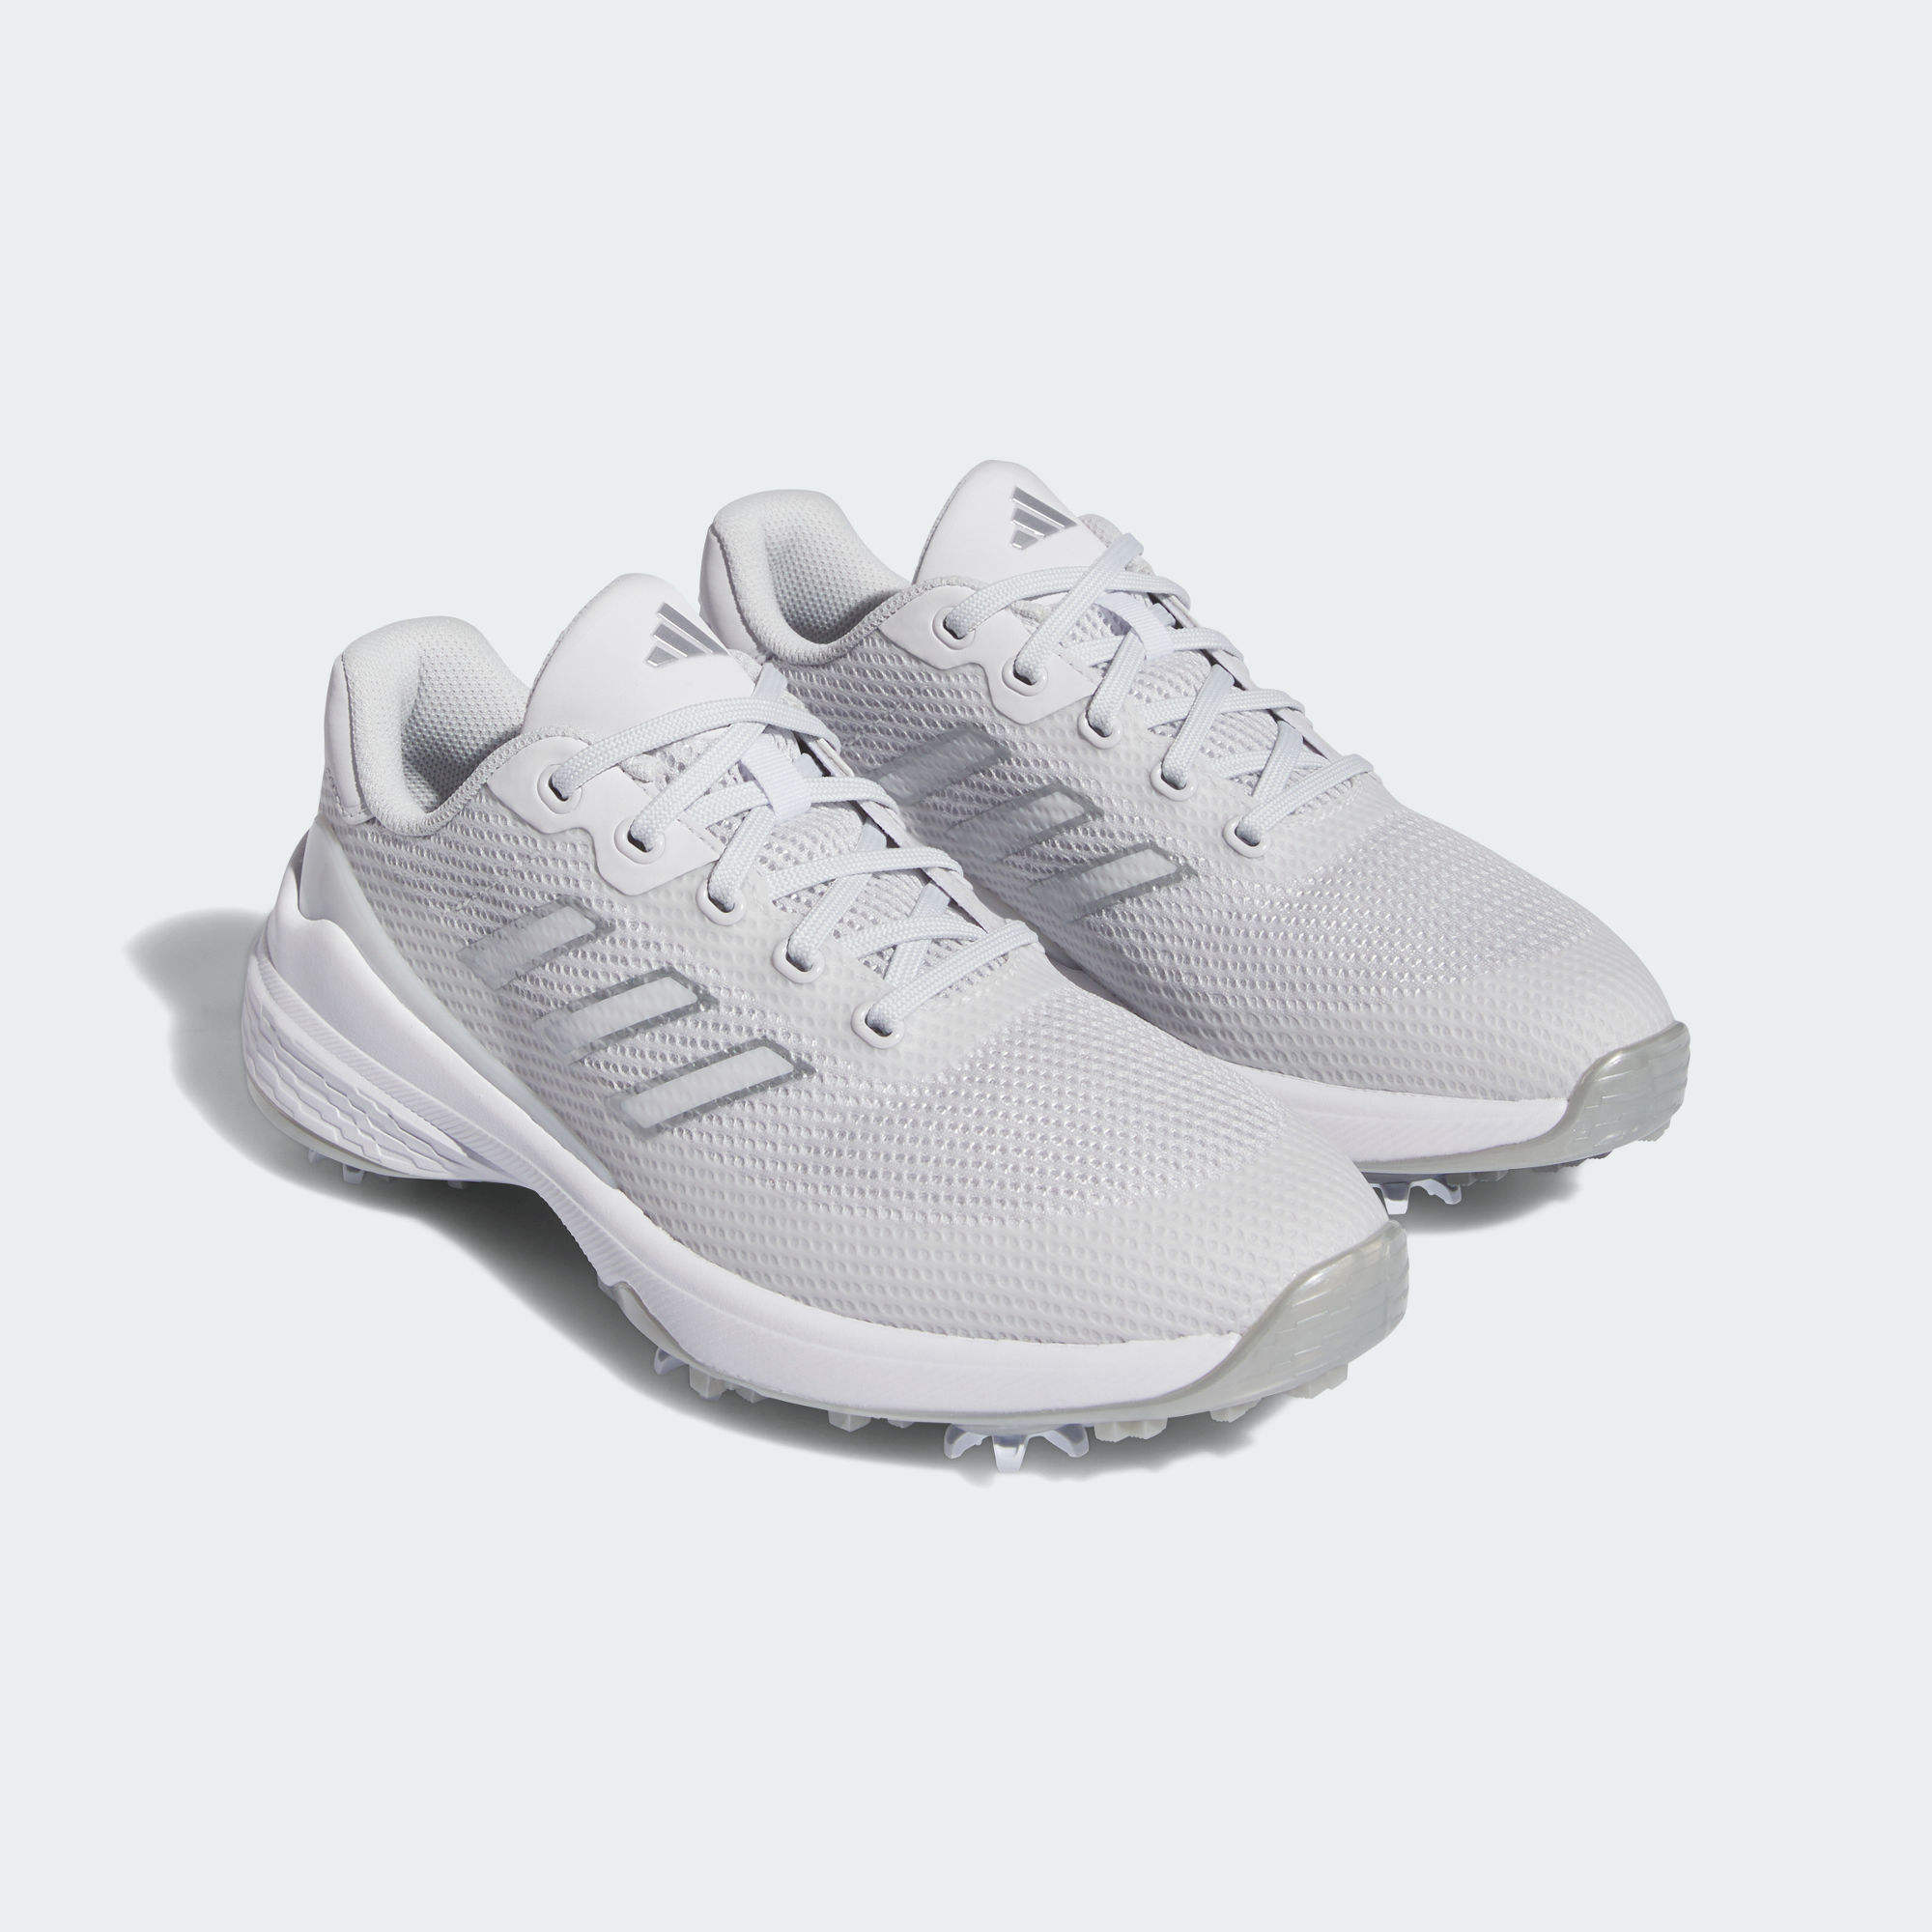 ZG23 VENT 高爾夫運動鞋- 灰色| 女子| adidas(愛迪達)香港官方網上商店